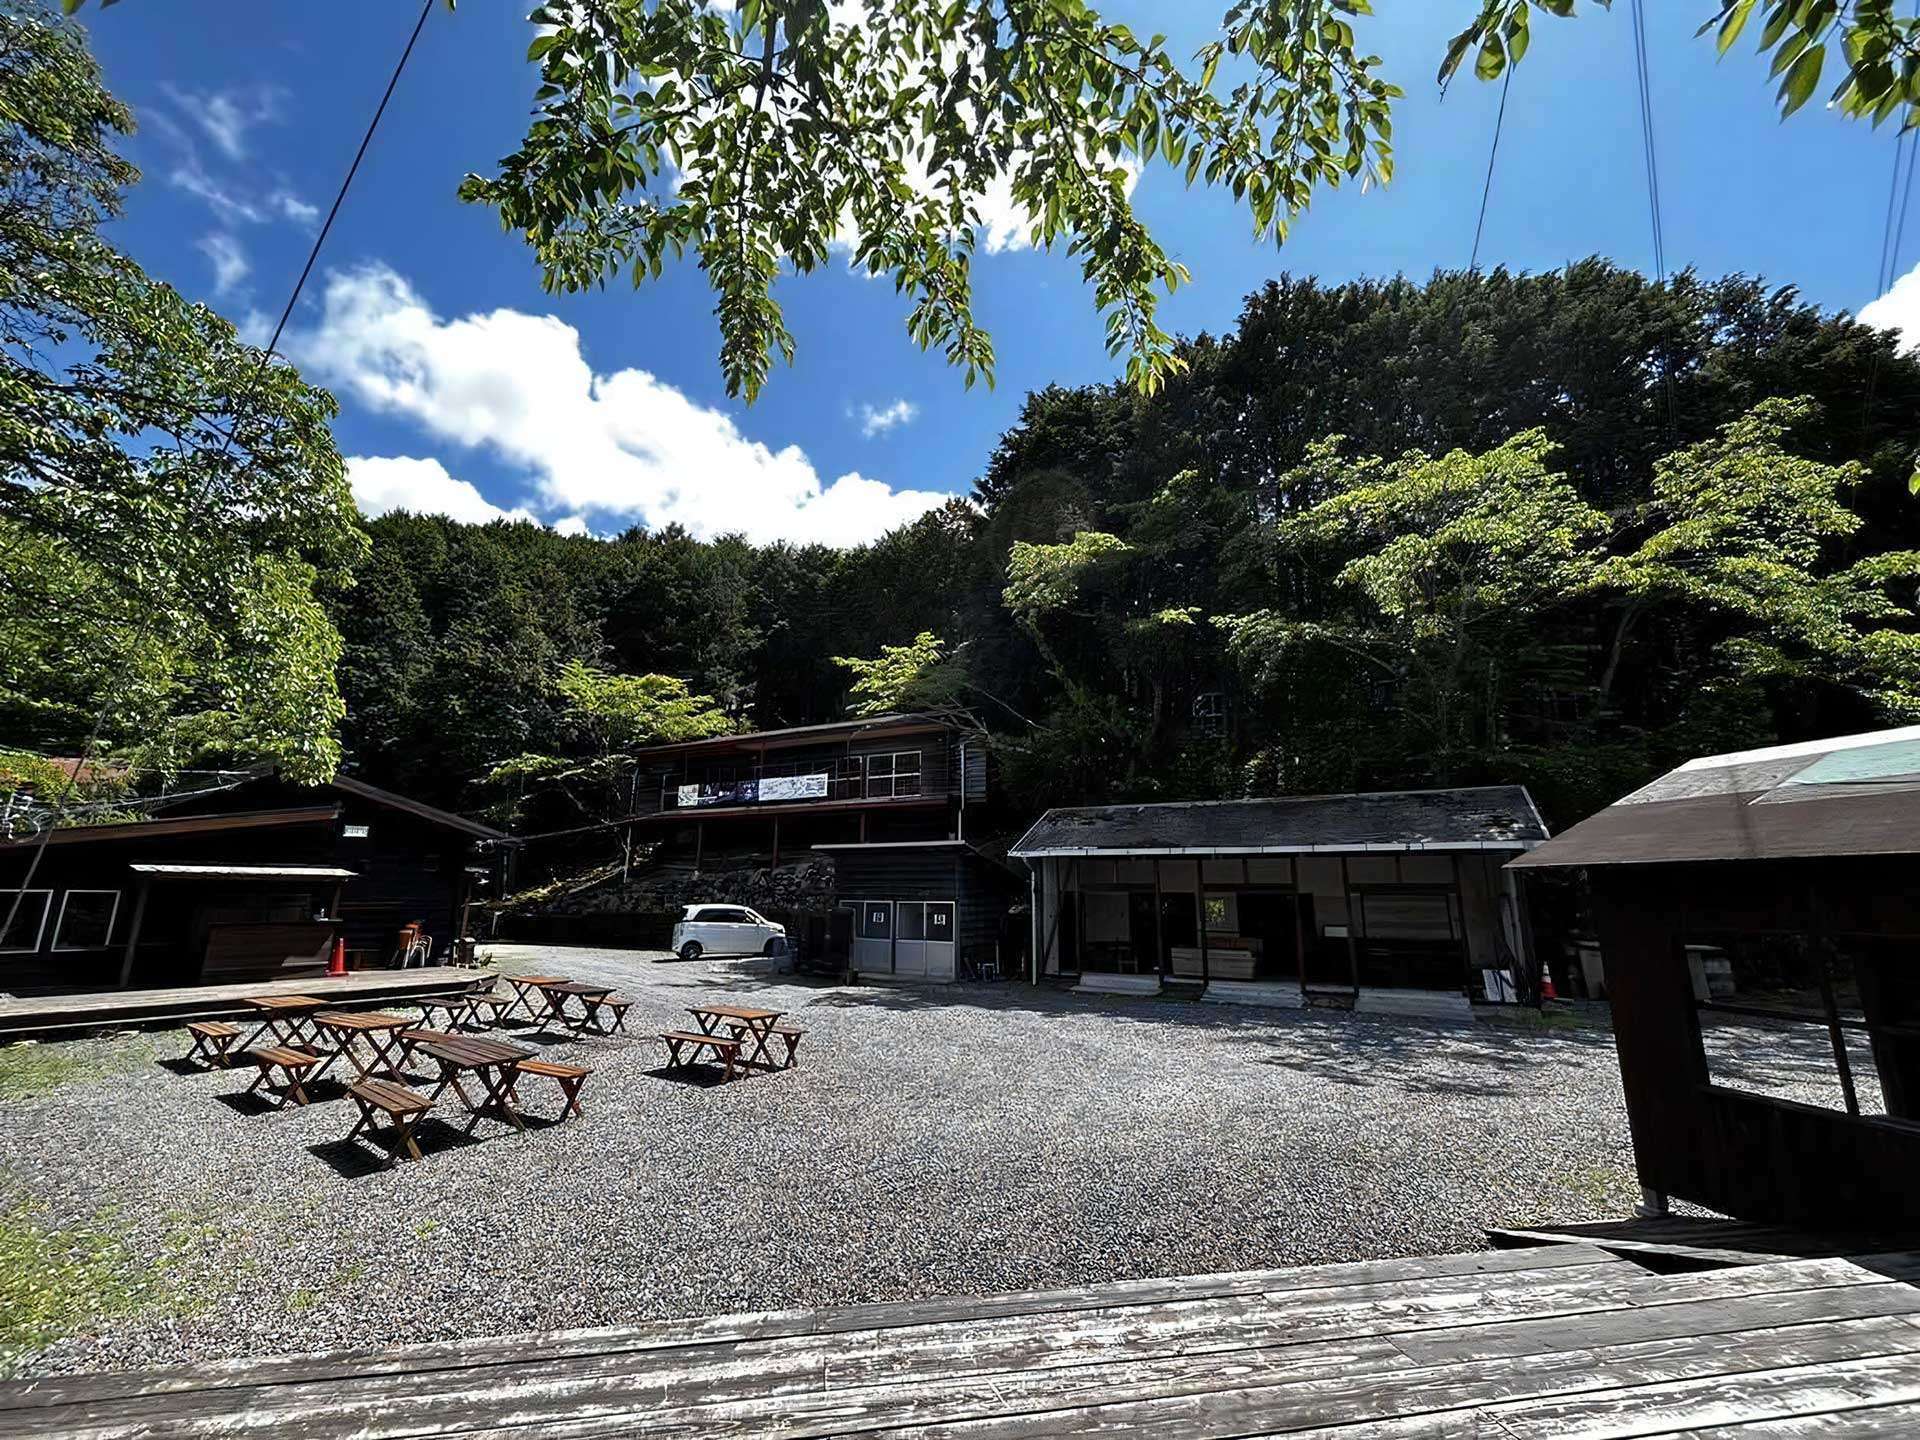 yuno camp site